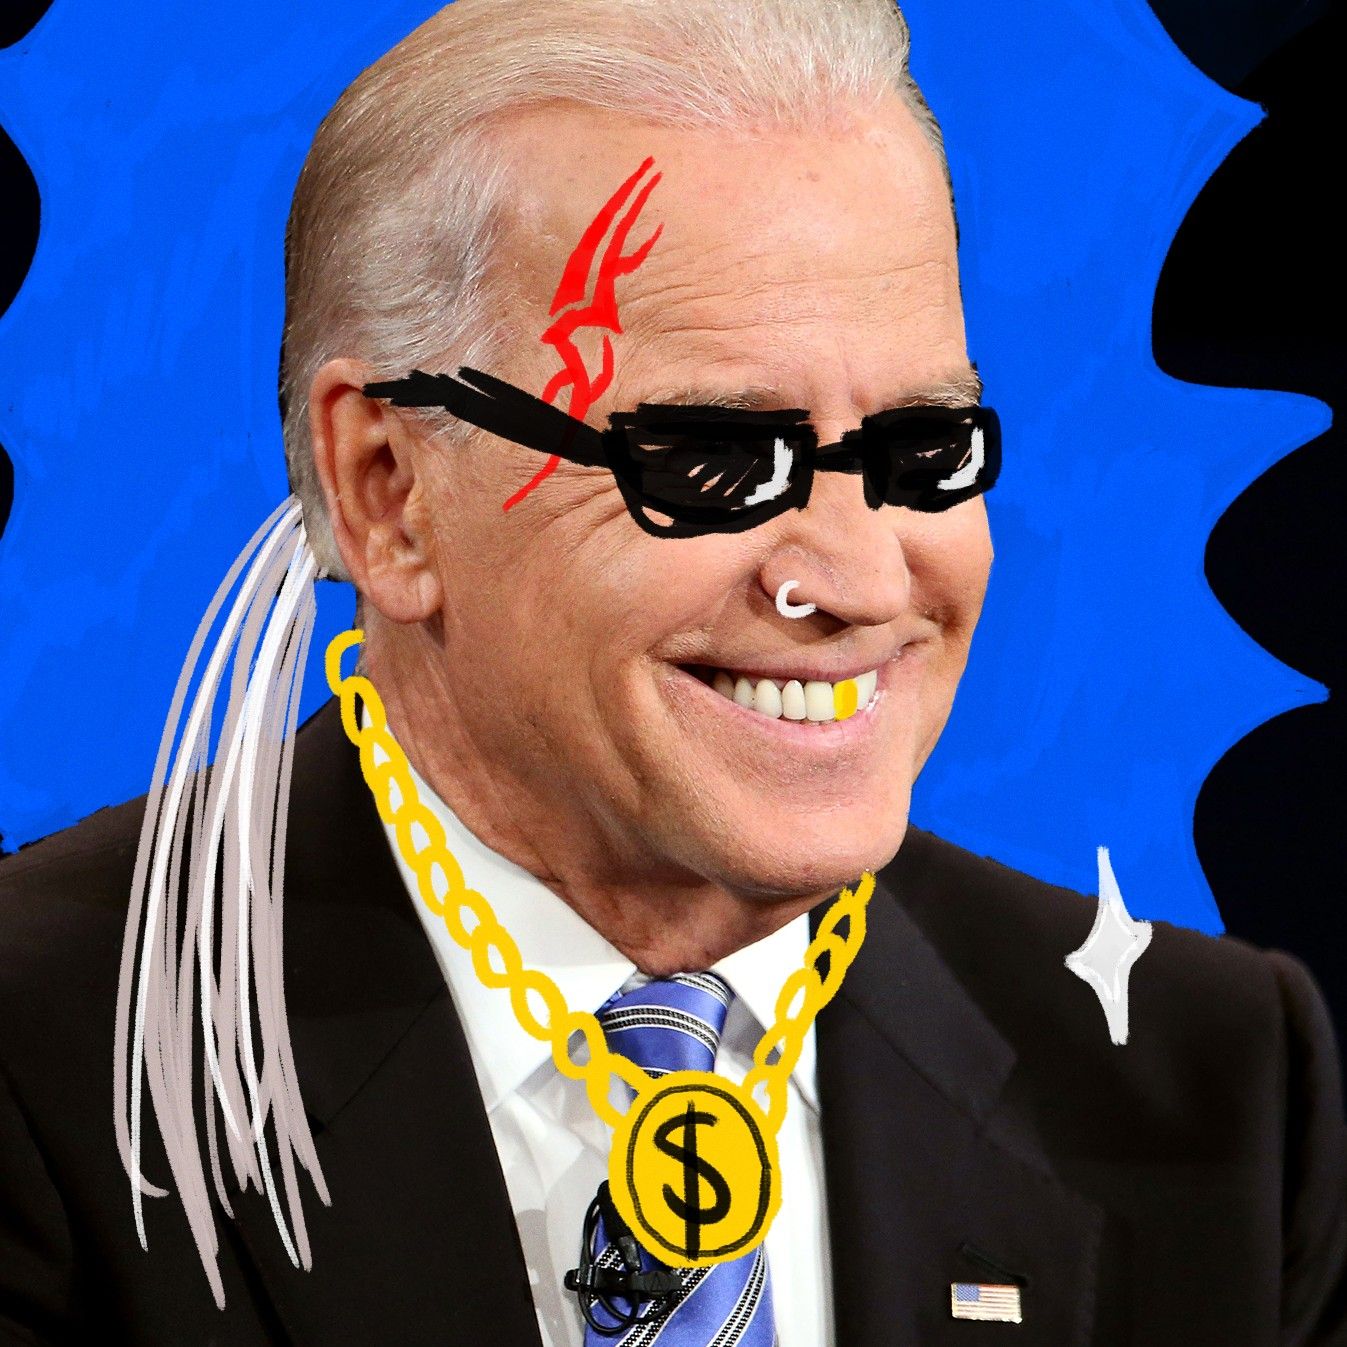 Area Man Regrets Helping Turn Joe Biden Into a Meme